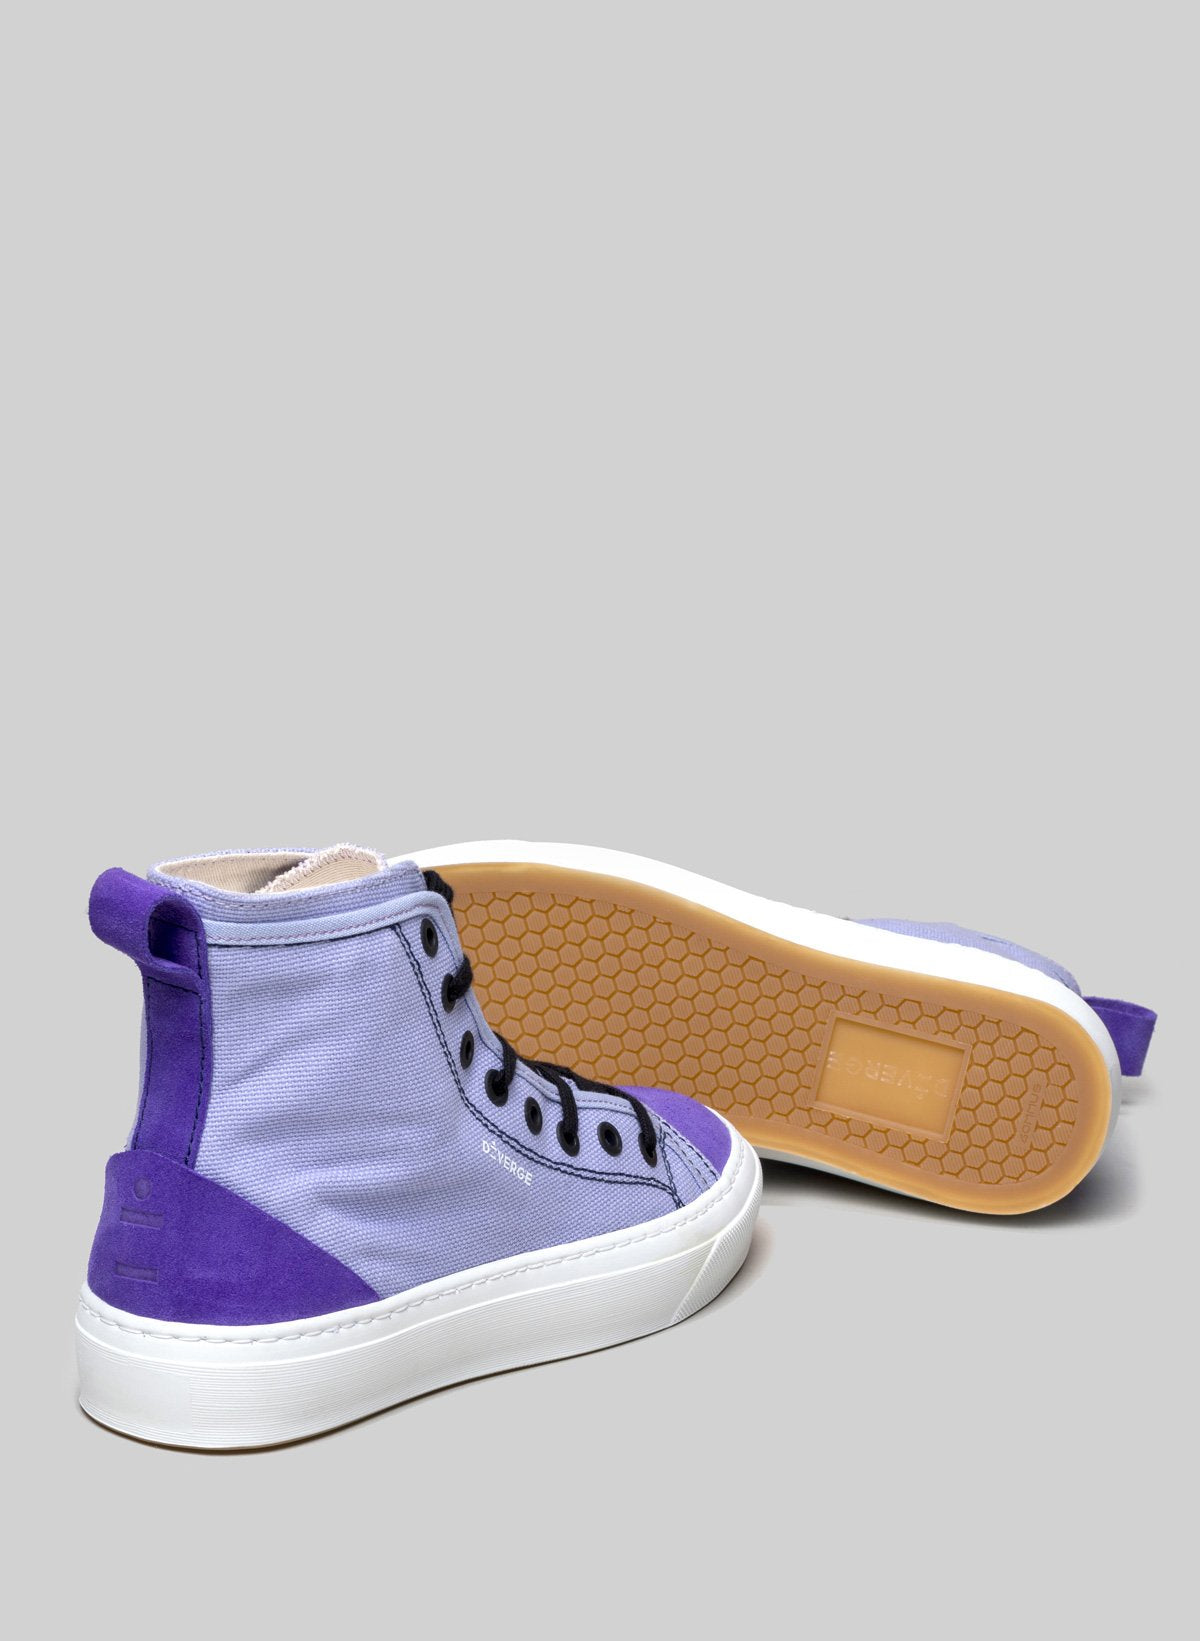 Lila High-Top-Schuhe sneakers von Diverge, die durch das imagine-Projekt soziale Auswirkungen und individuelle Schuhe fördern.